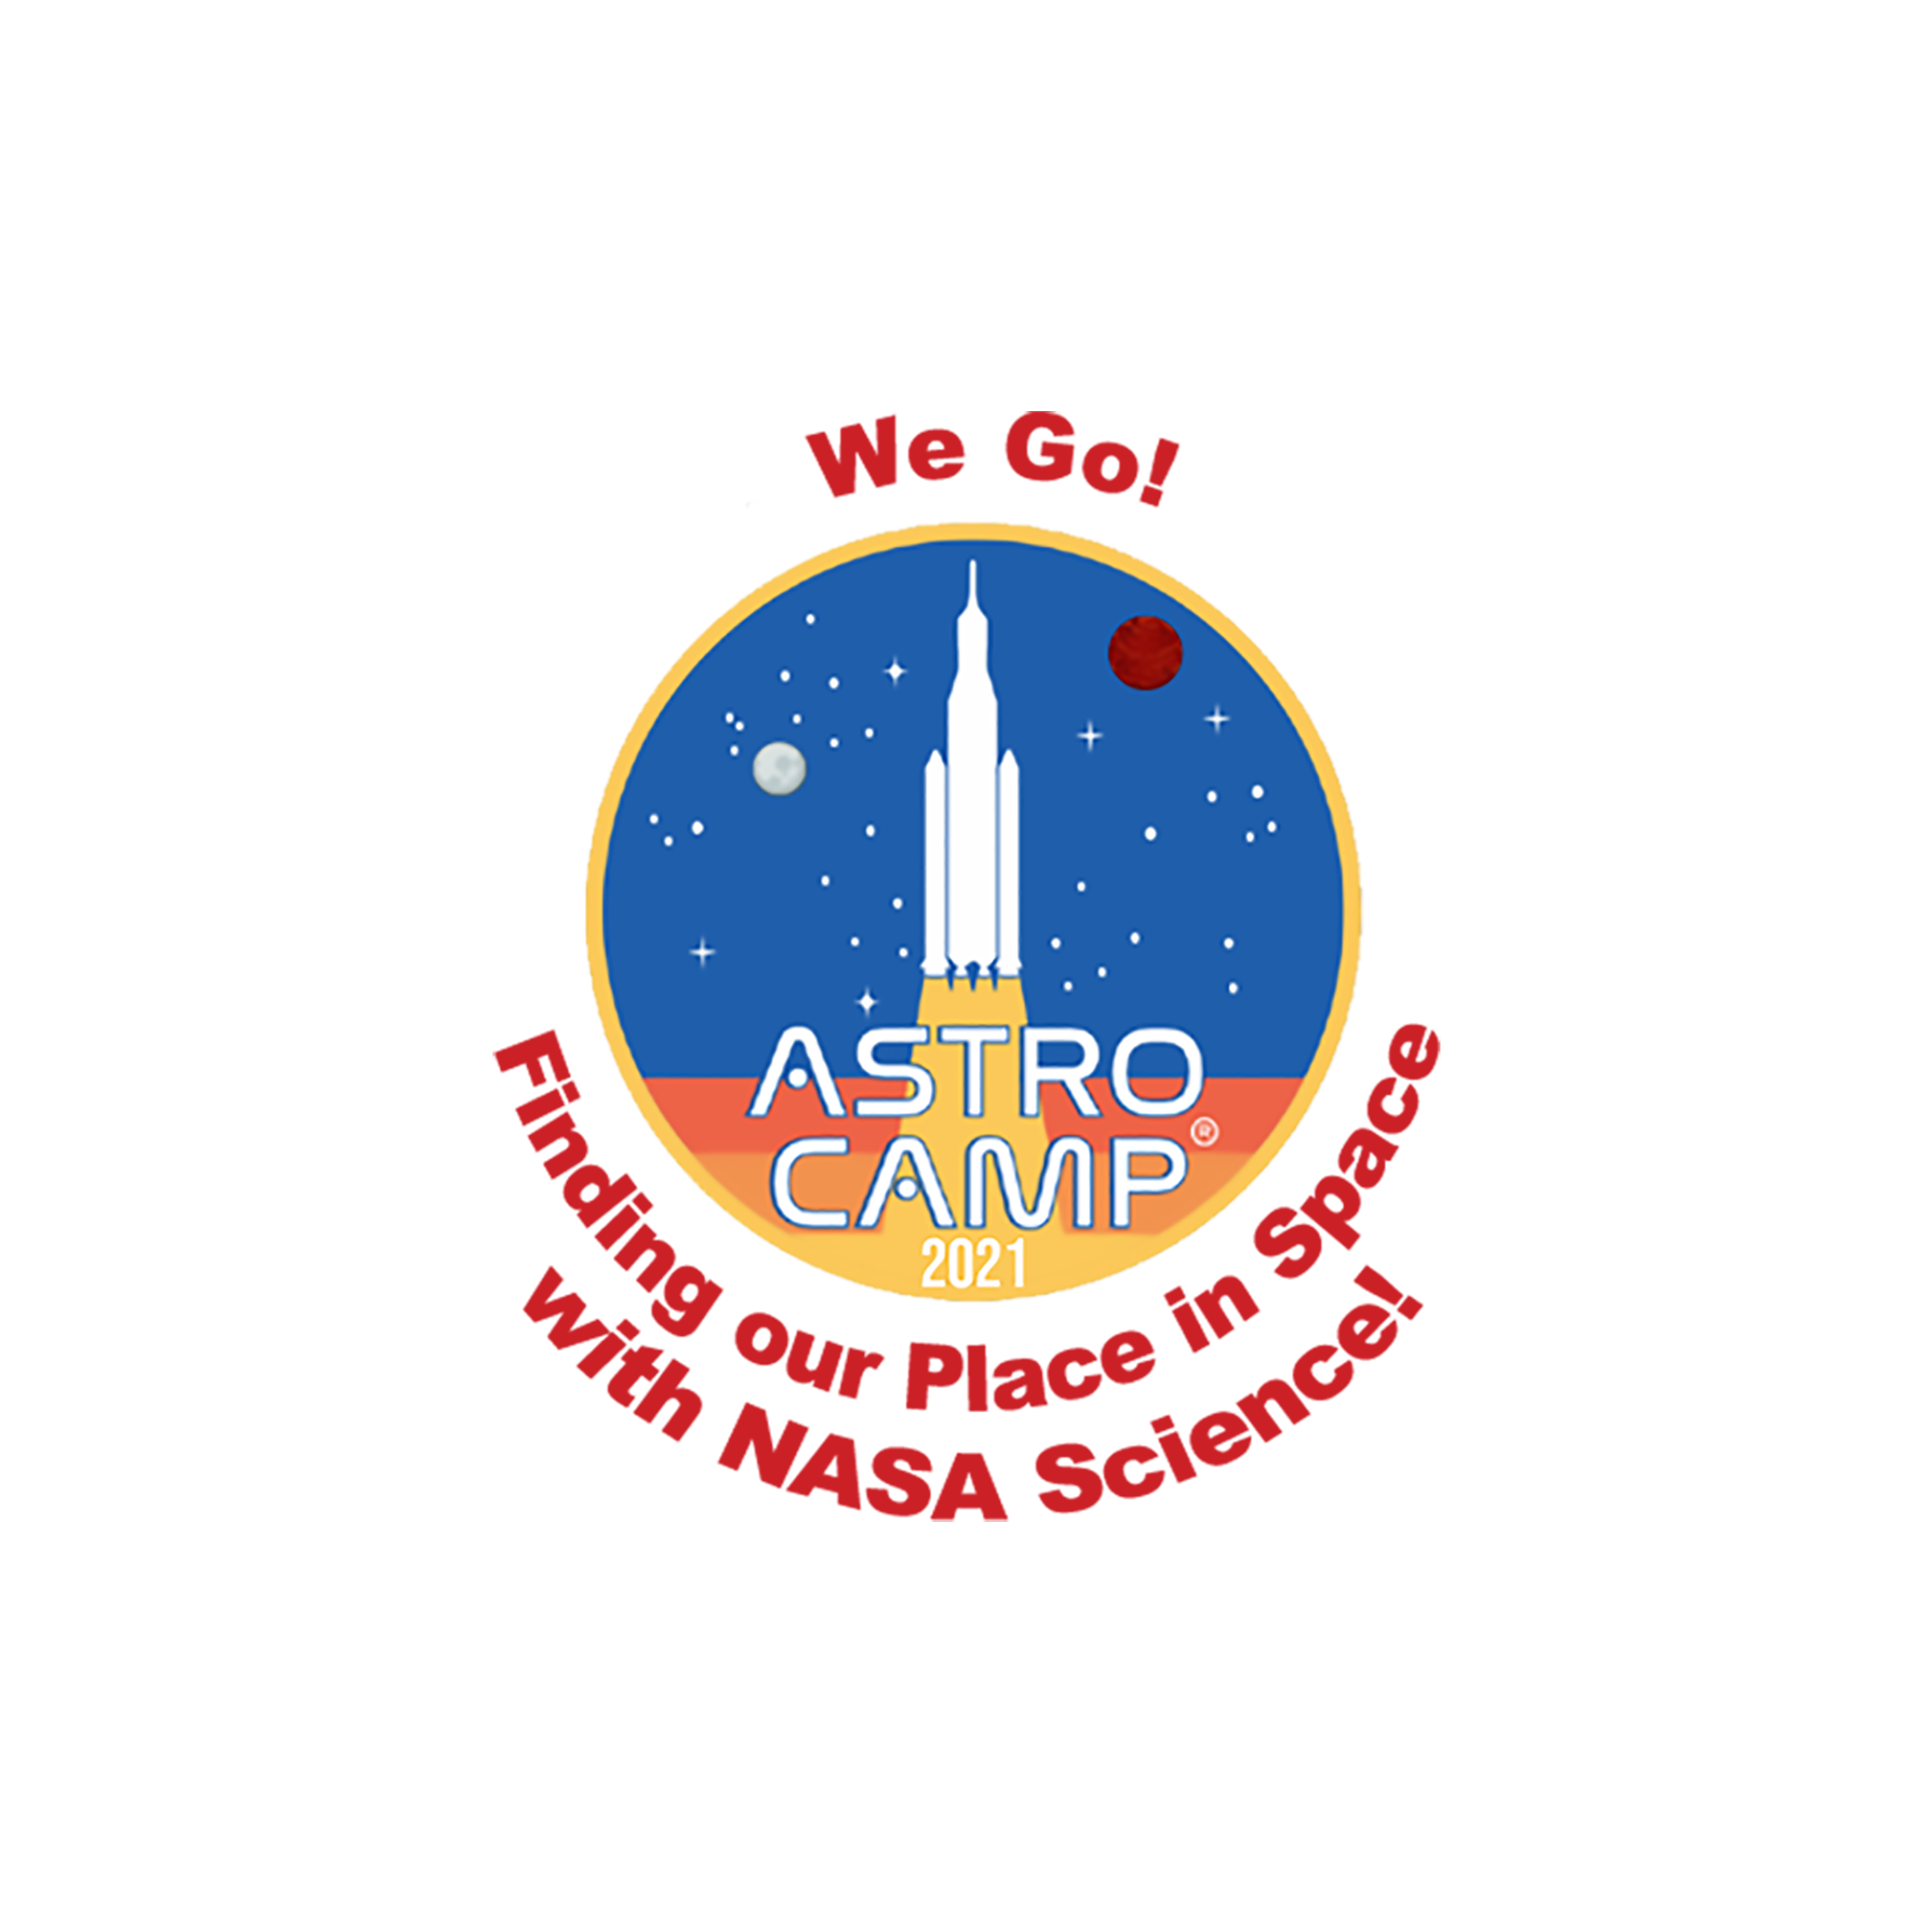 ASTRO CAMP 2021